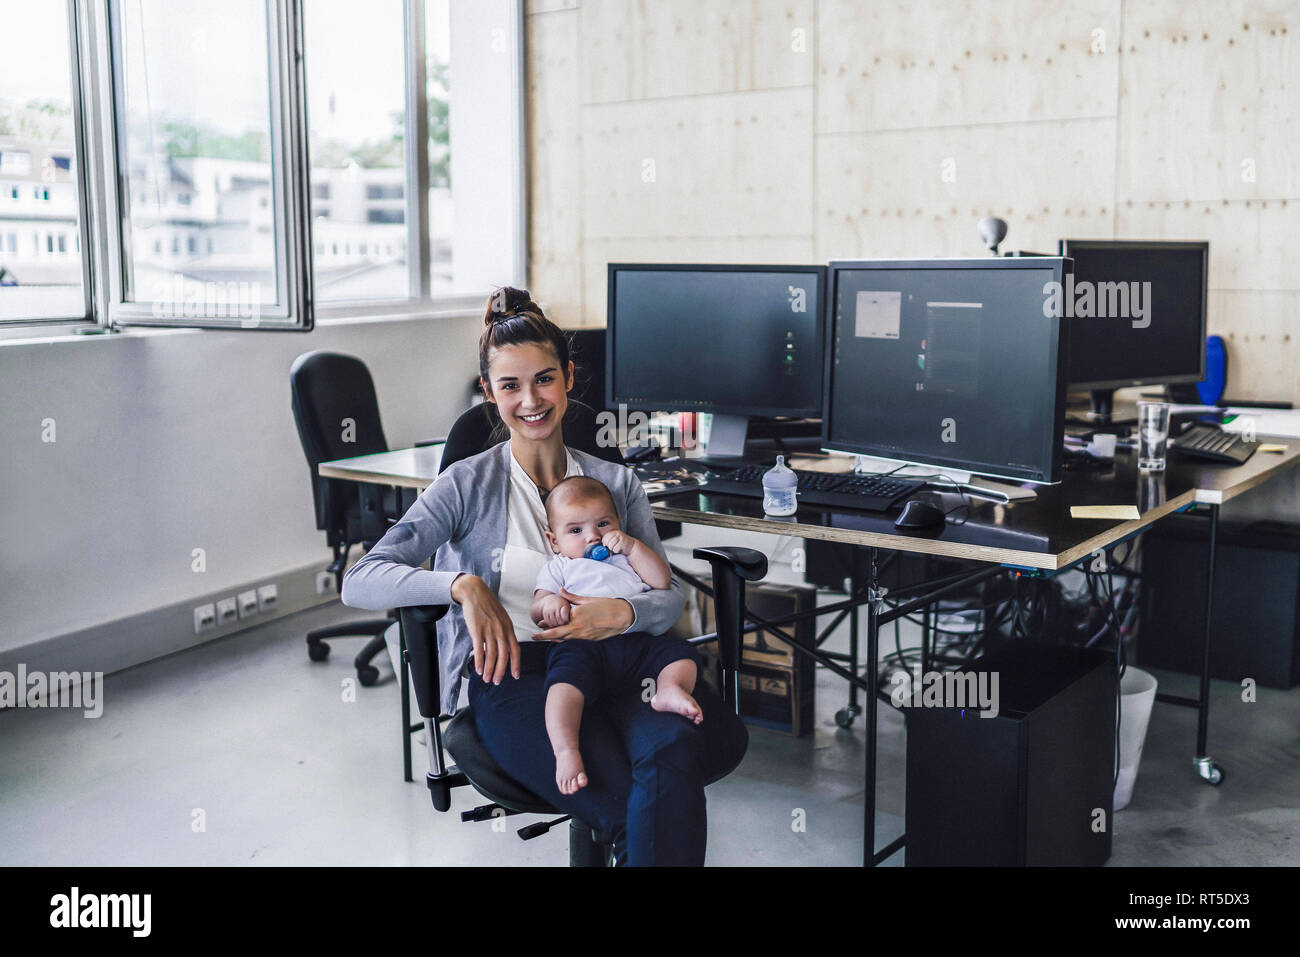 Lavorando madre con bambino sul suo grembo, seduta in ufficio Foto Stock